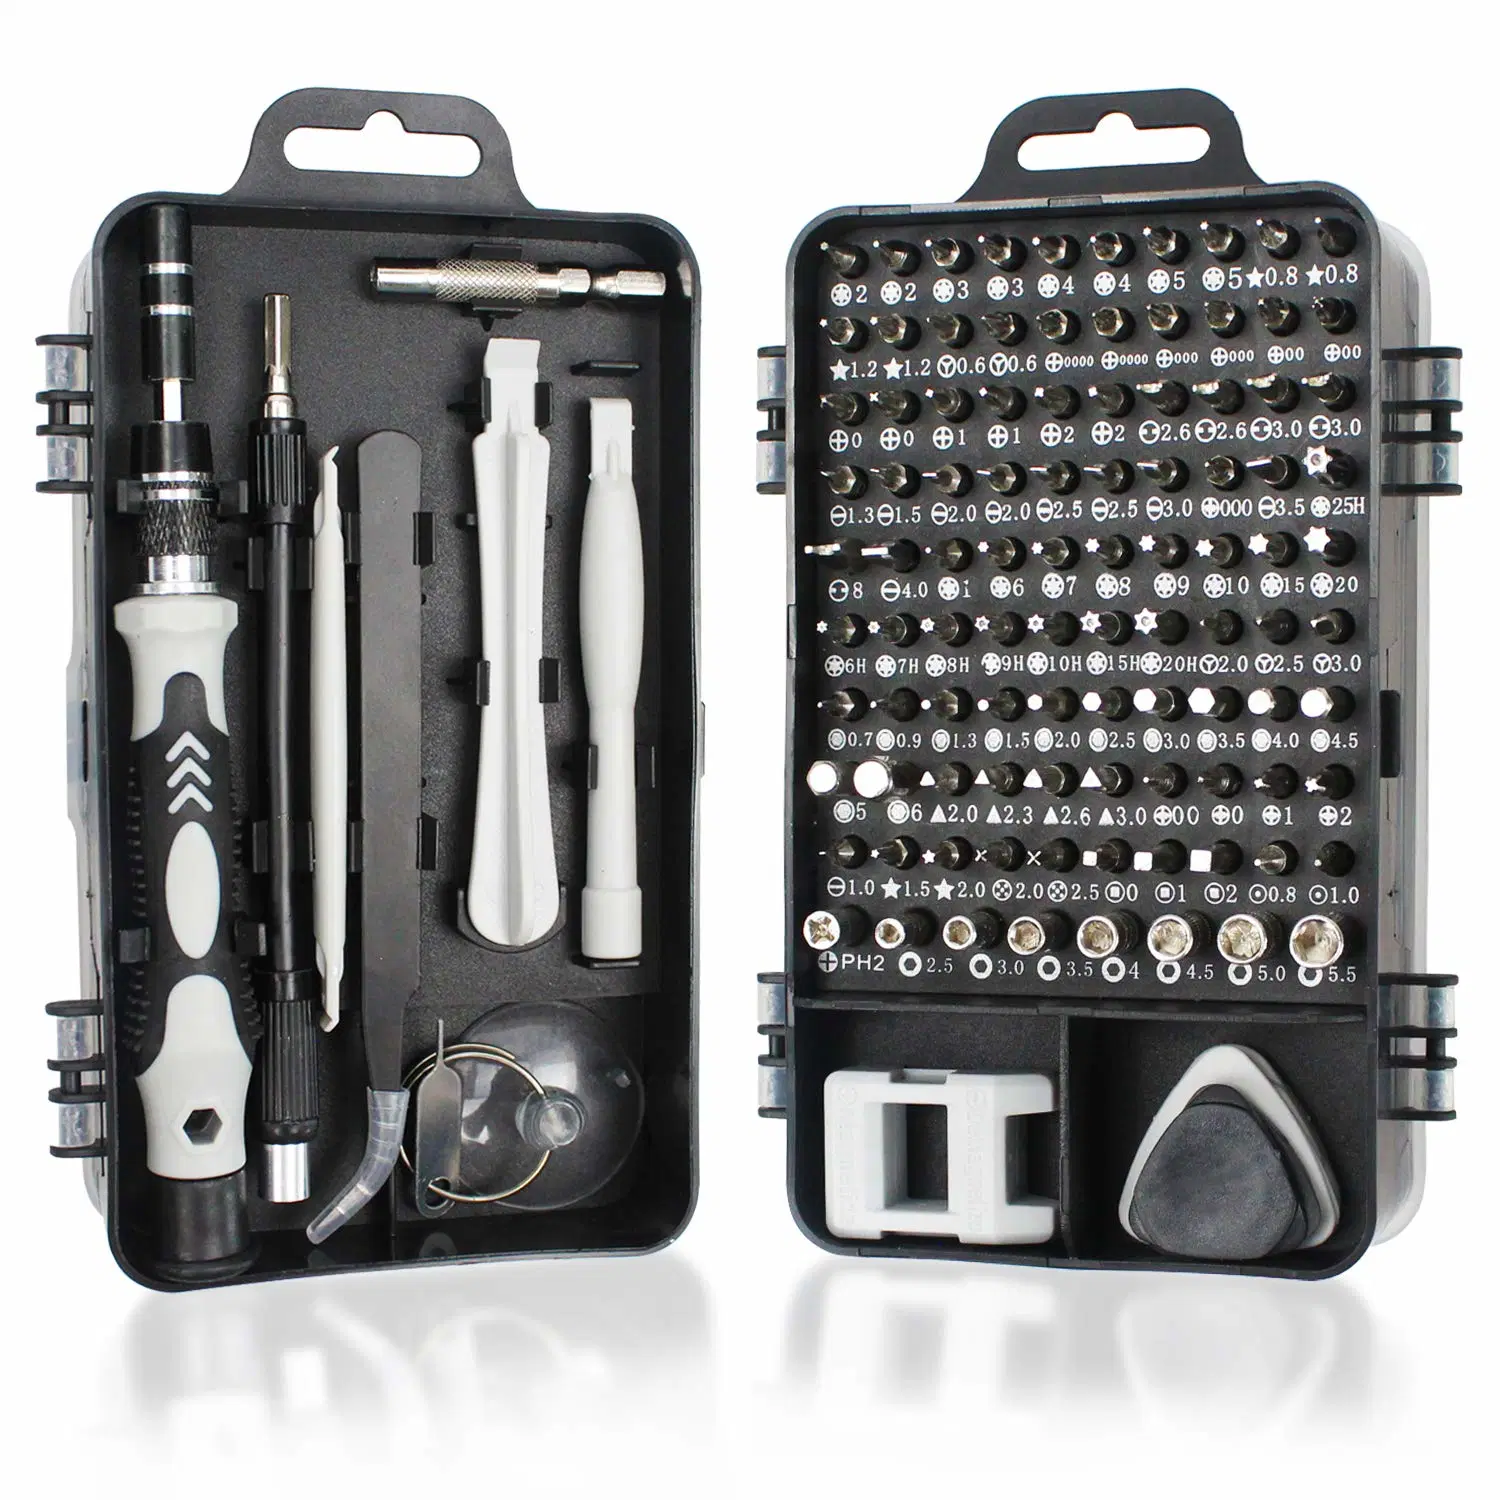 Mini Präzisions-Schraubendreher-Set 115 in 1 Professionelle Reparatur-Tool-Kit mit Magnetschrauber für Handy, Computer, Laptop, Uhr